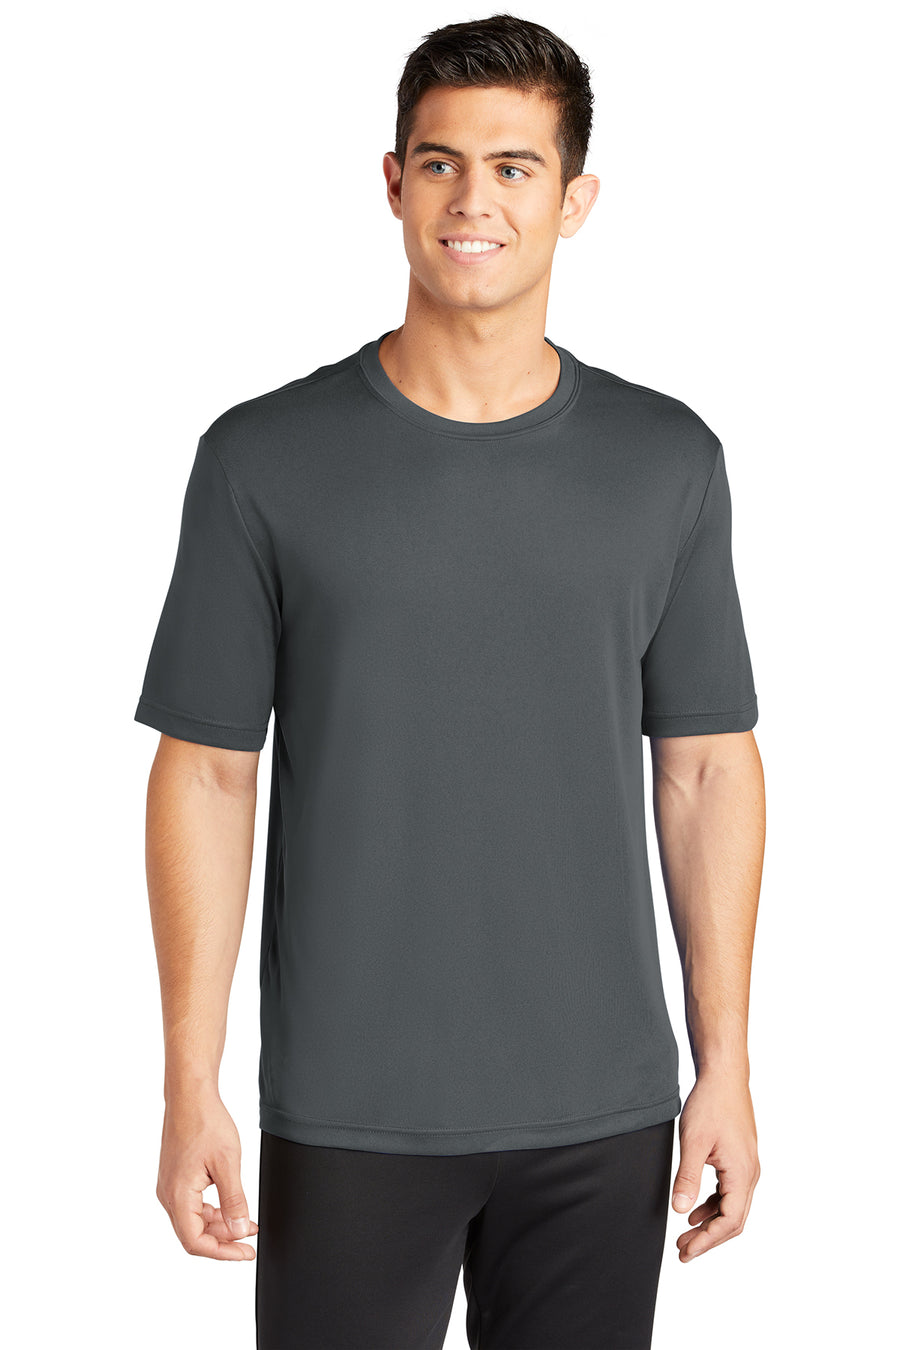 Men's 100% Polyester Moisture-Wicking T-Shirt (Short Sleeve)